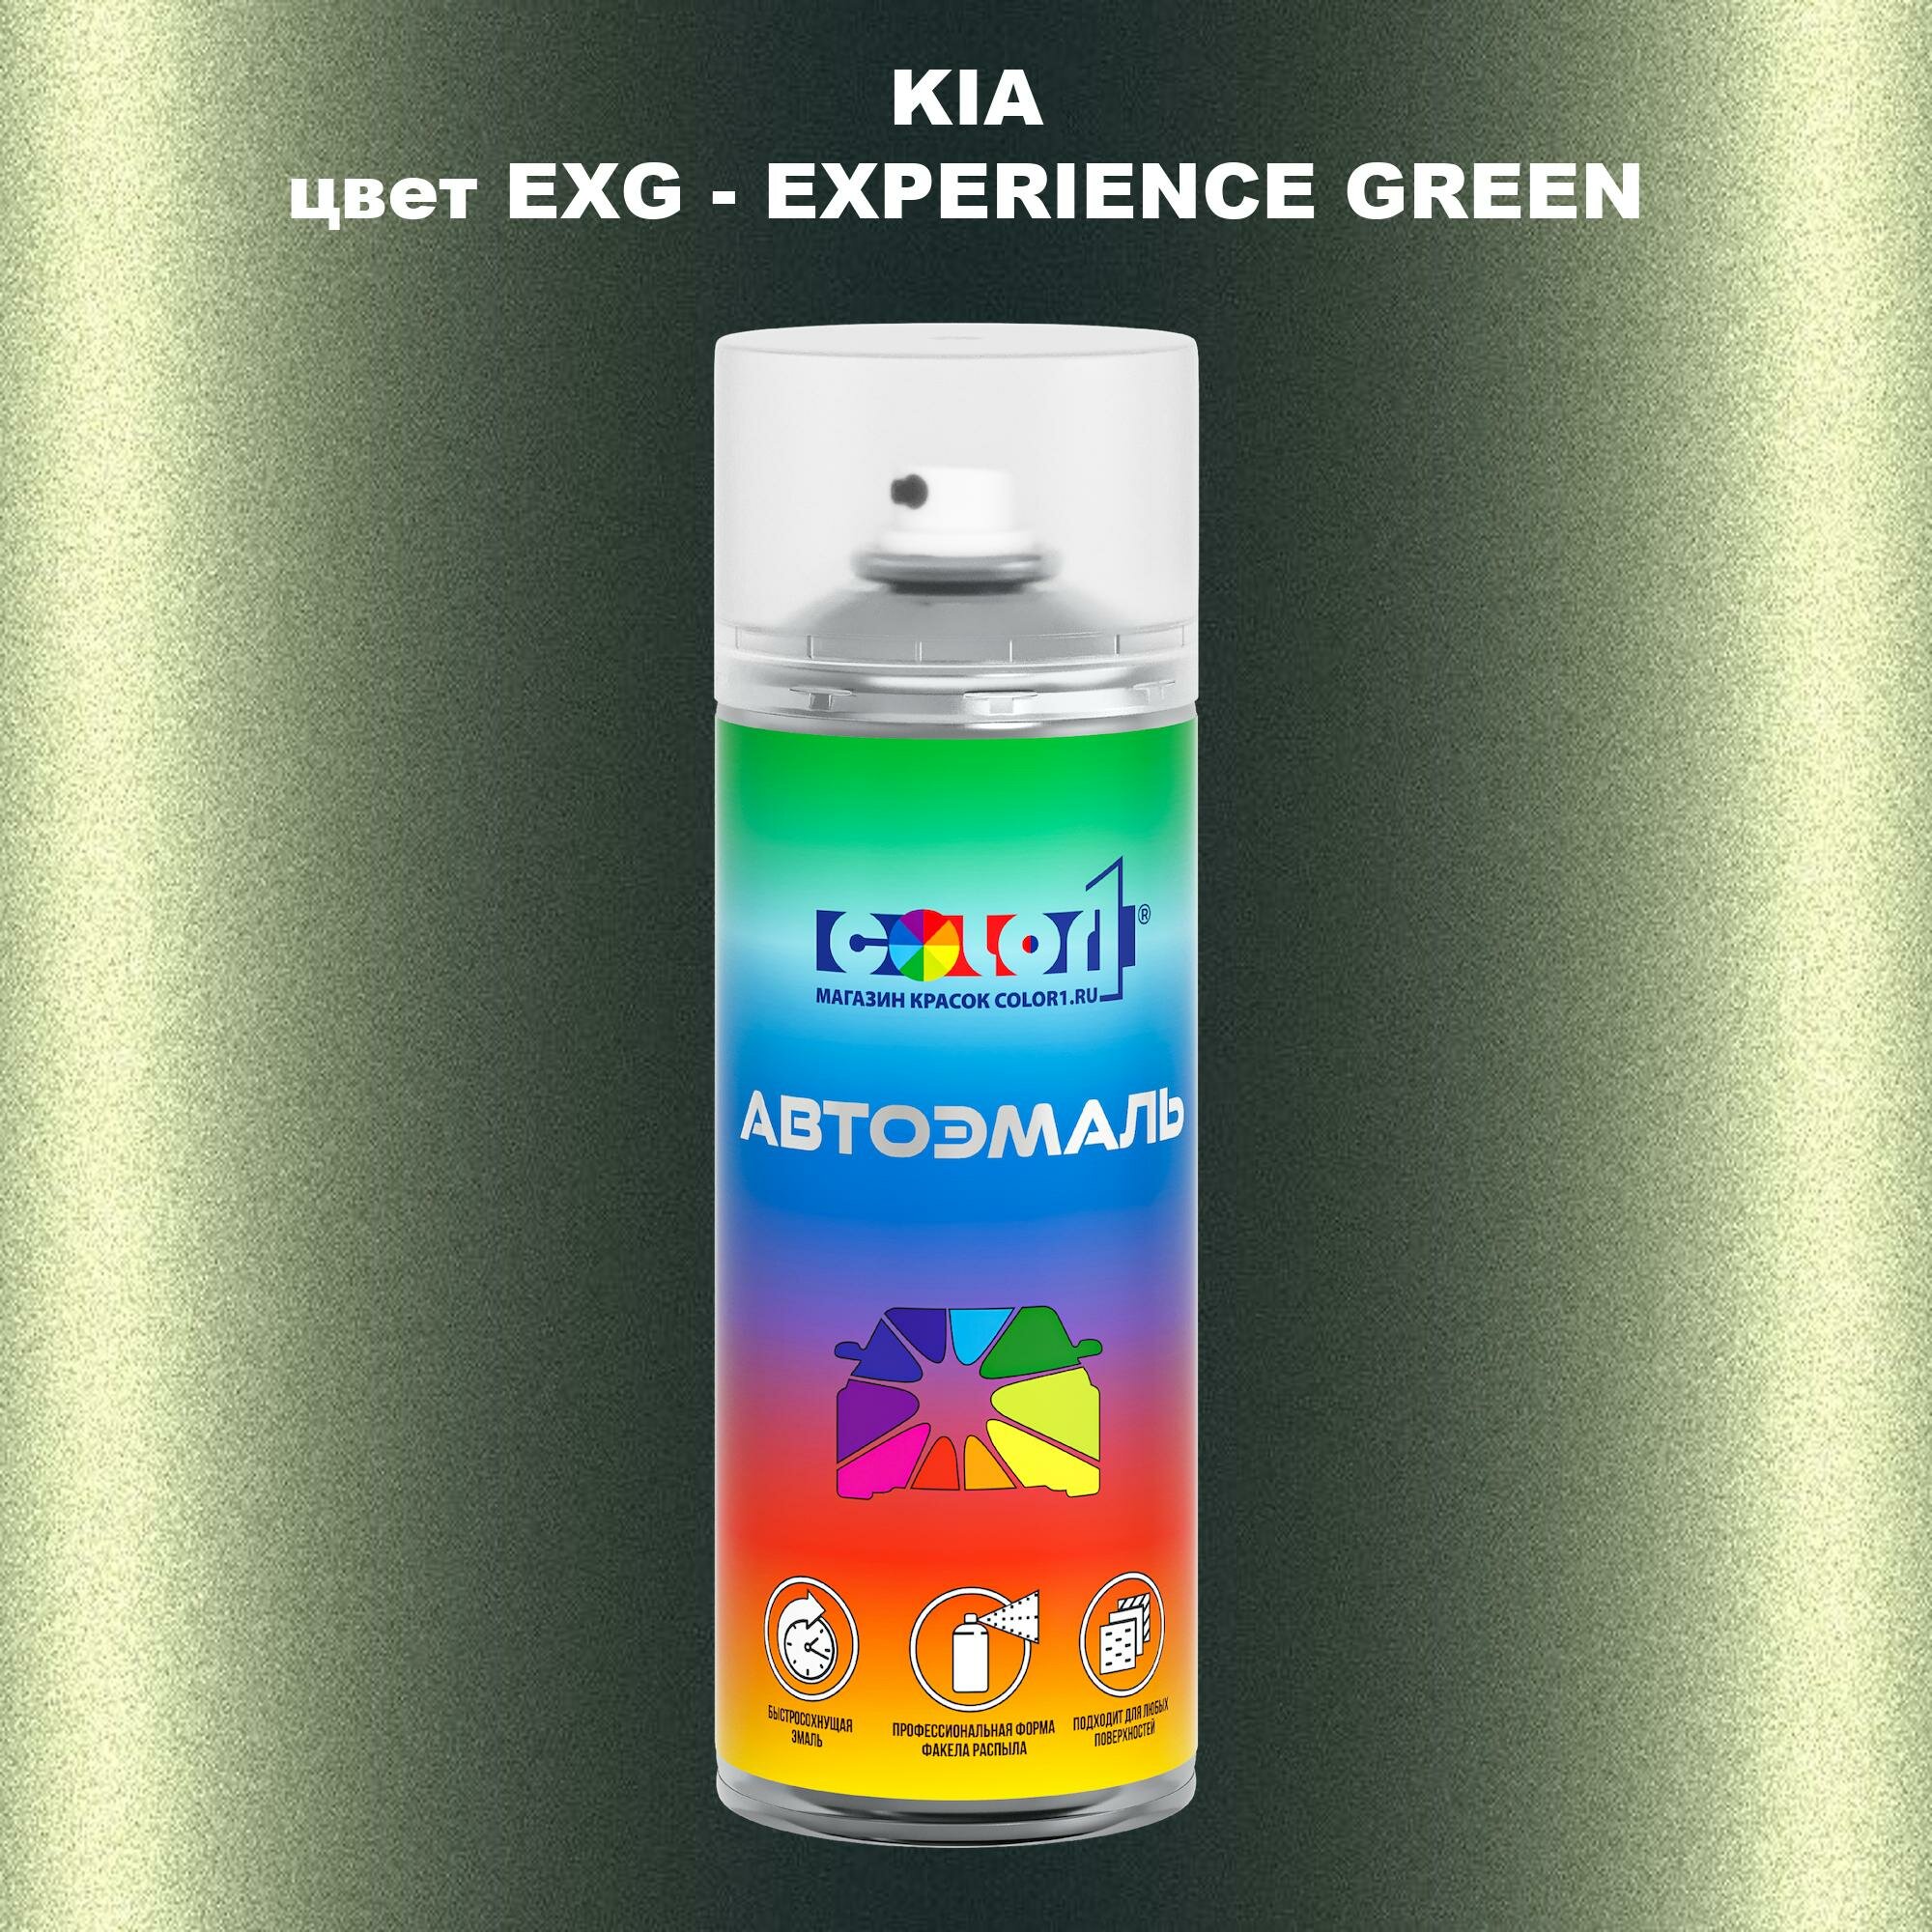 Аэрозольная краска COLOR1 для KIA, цвет EXG - EXPERIENCE GREEN